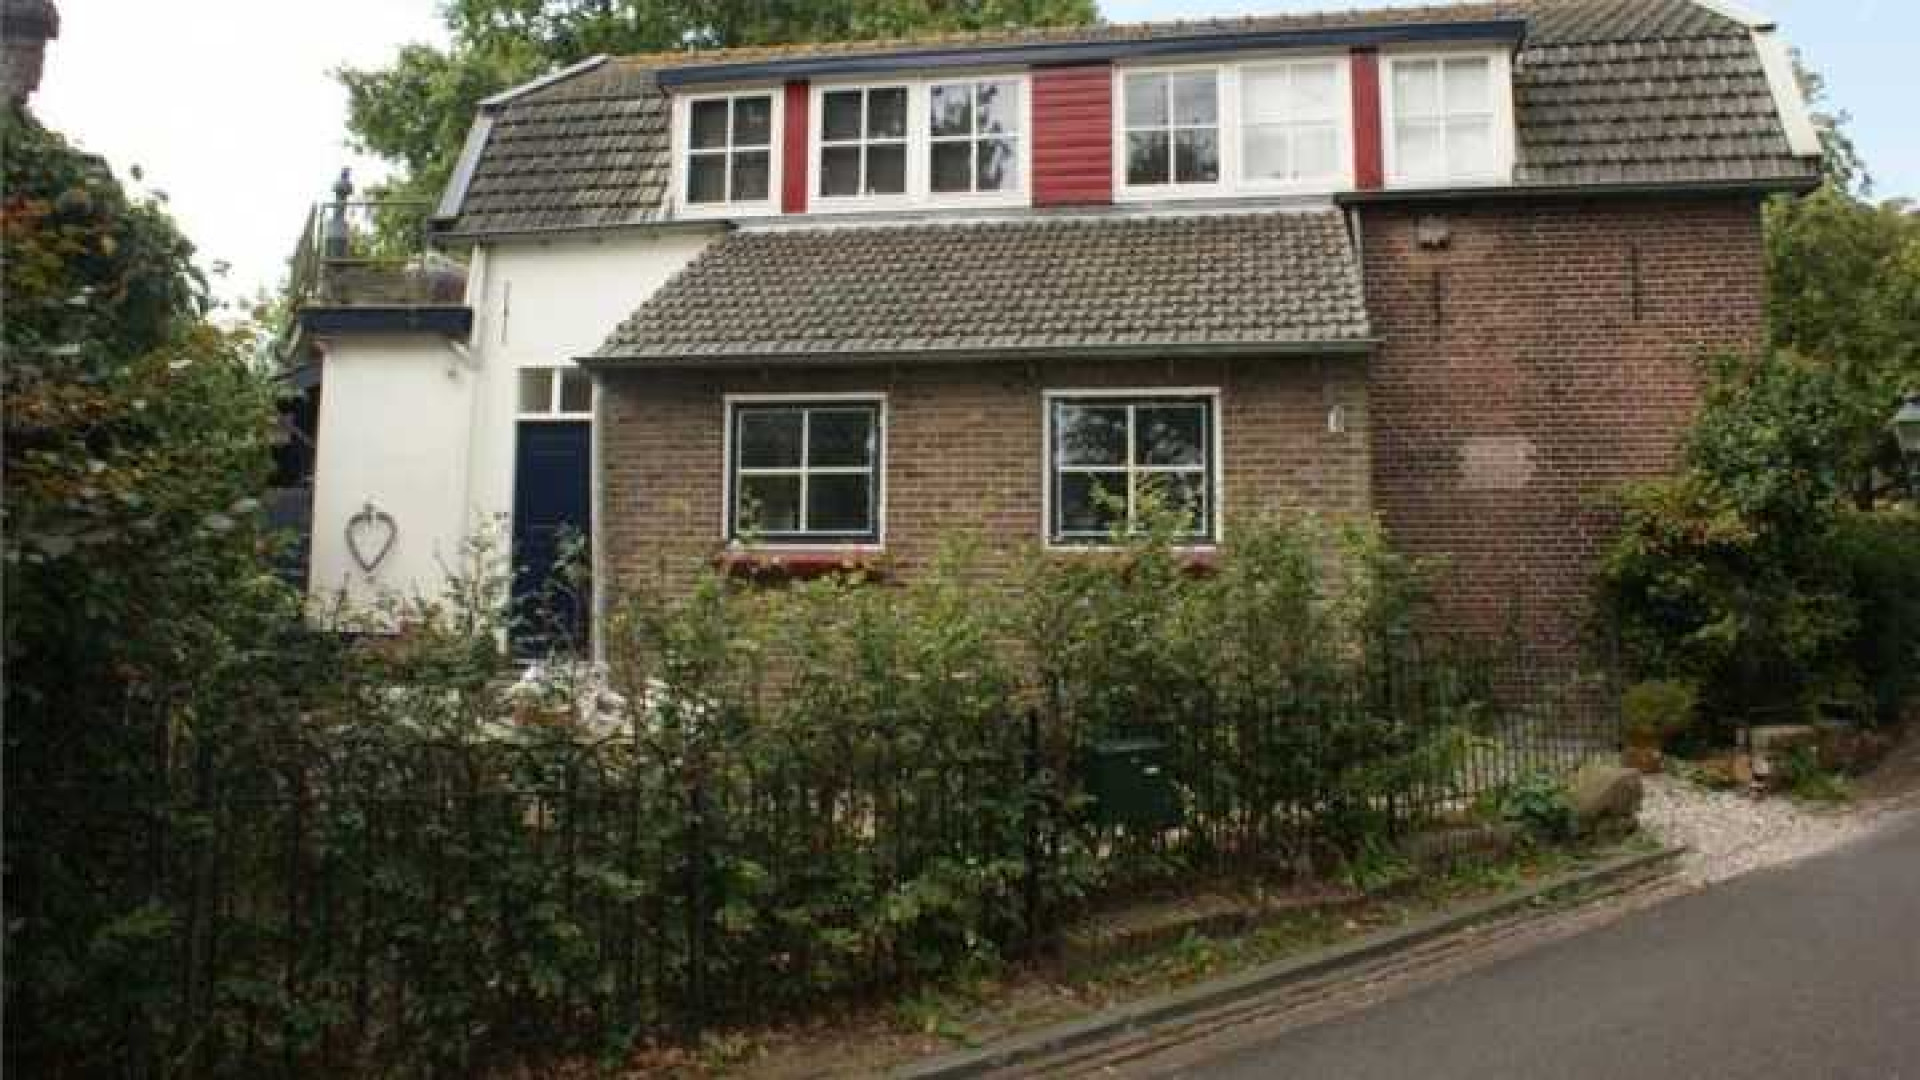 Herman van Veen verlaagt vraagprijs van zijn huis. Zie foto's 13